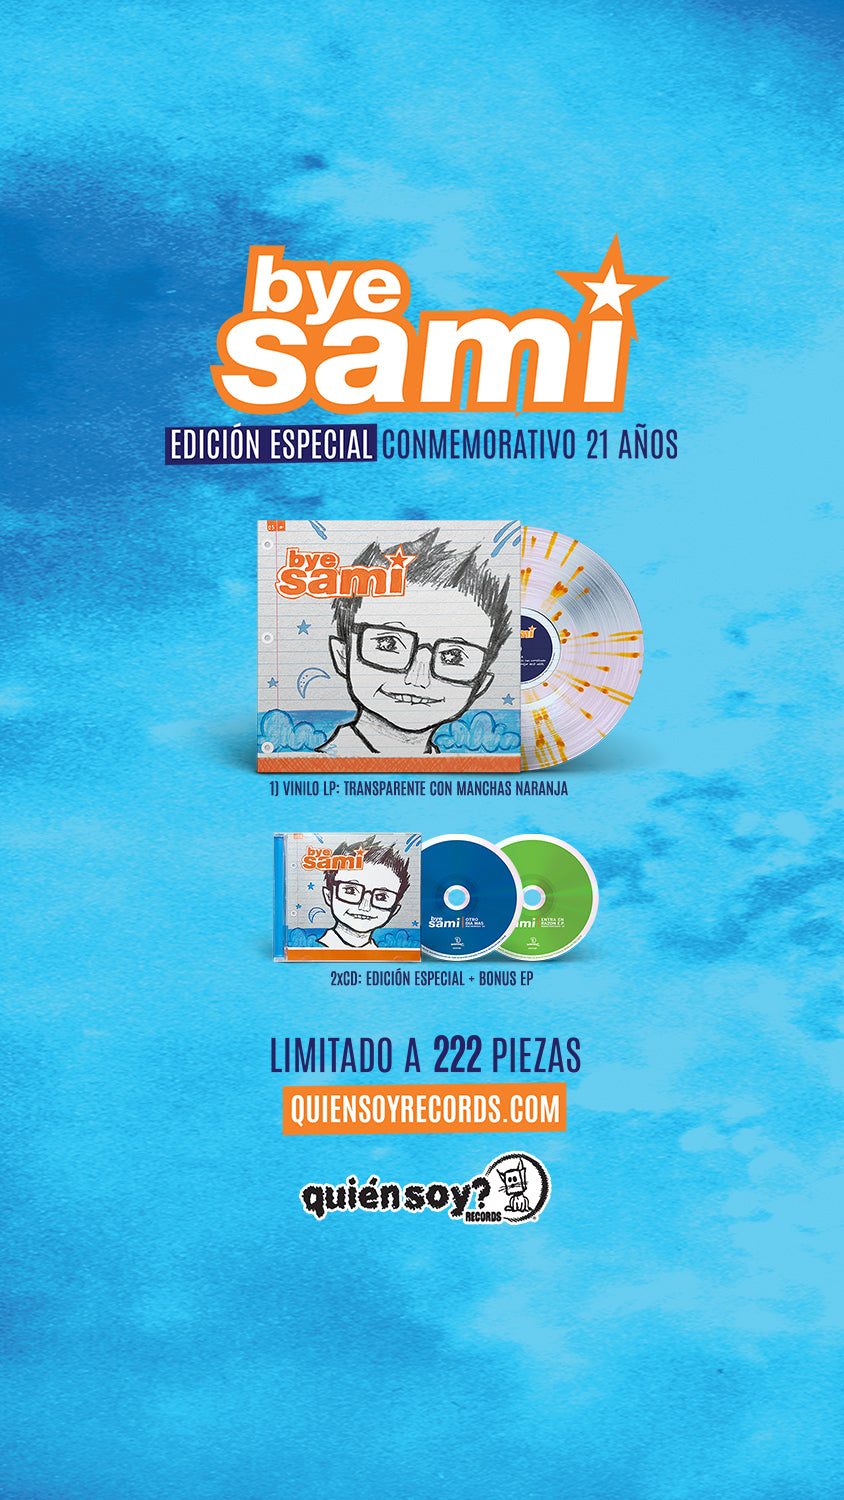 Bye Sami LP & CD Edicion Especial Conmemorativo 21 años. Quien Soy? Records.